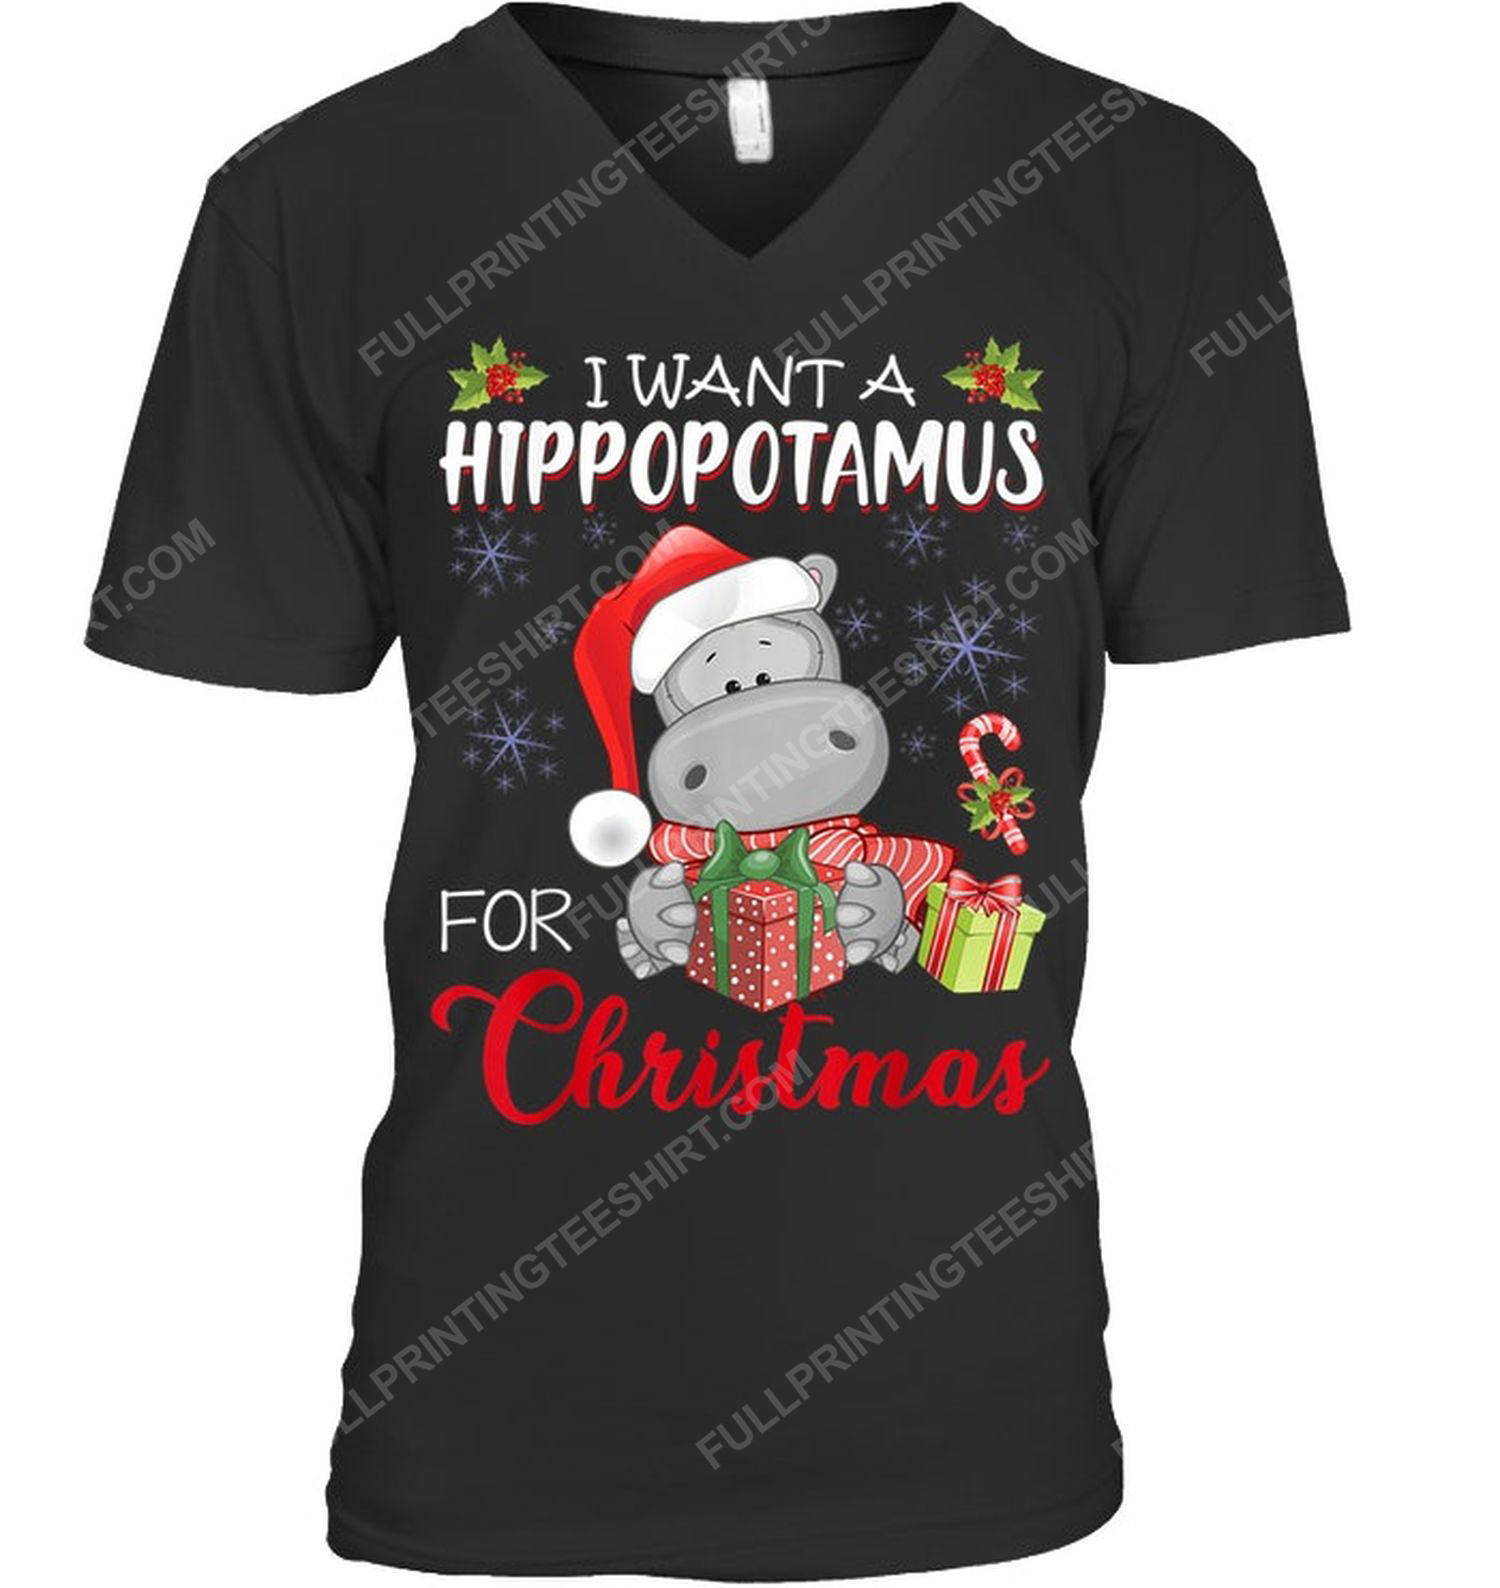 I want a hippopotamus for christmas v-neck